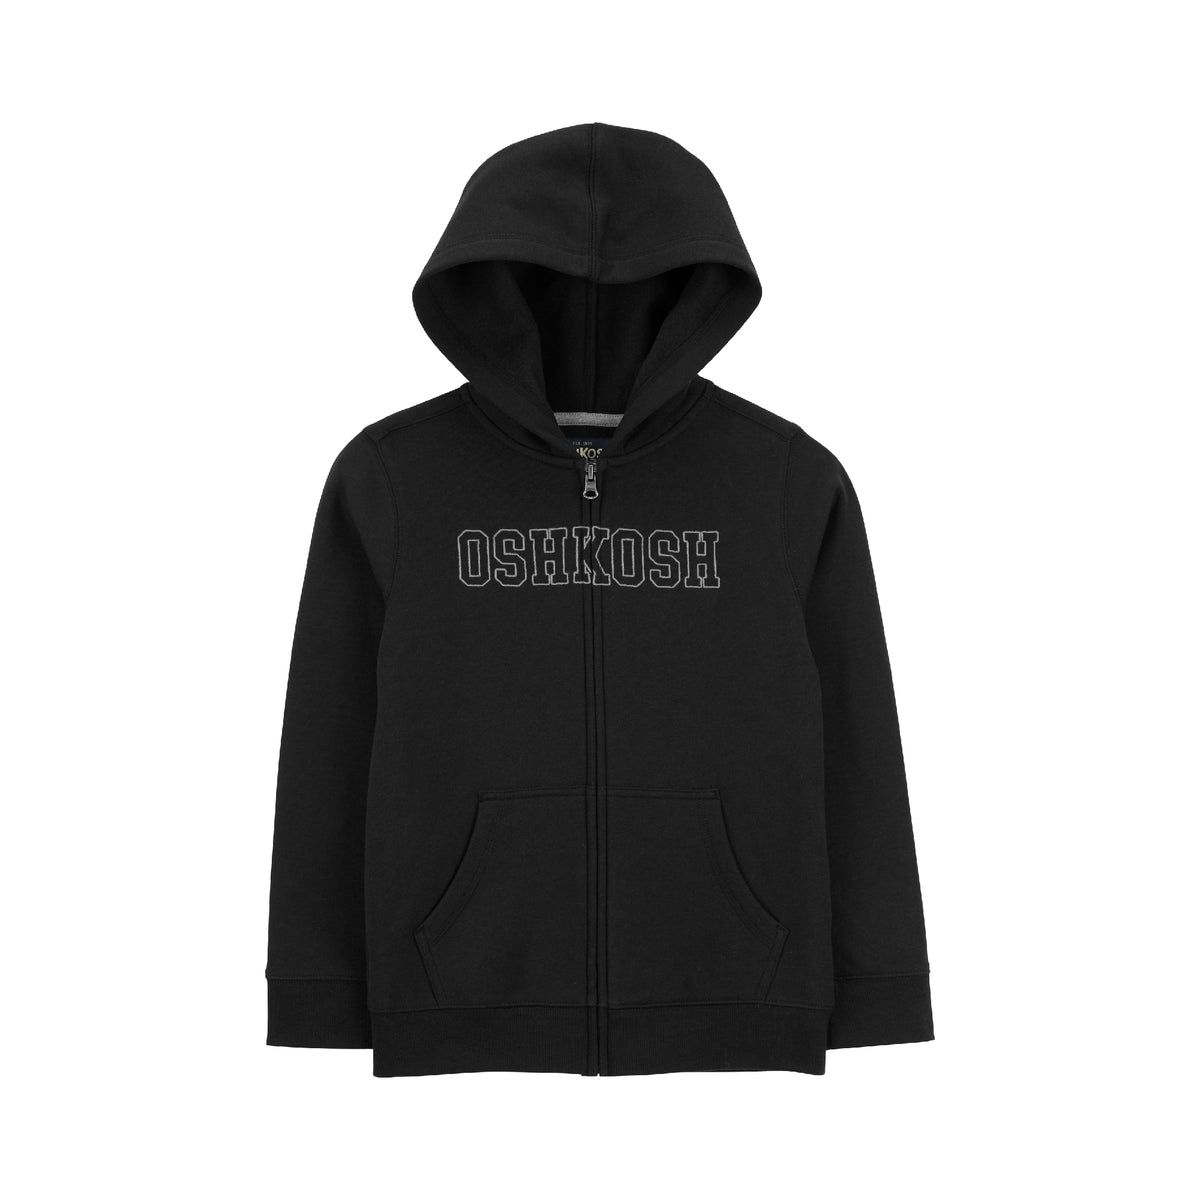 OshKosh black hooded jacket (5-8)